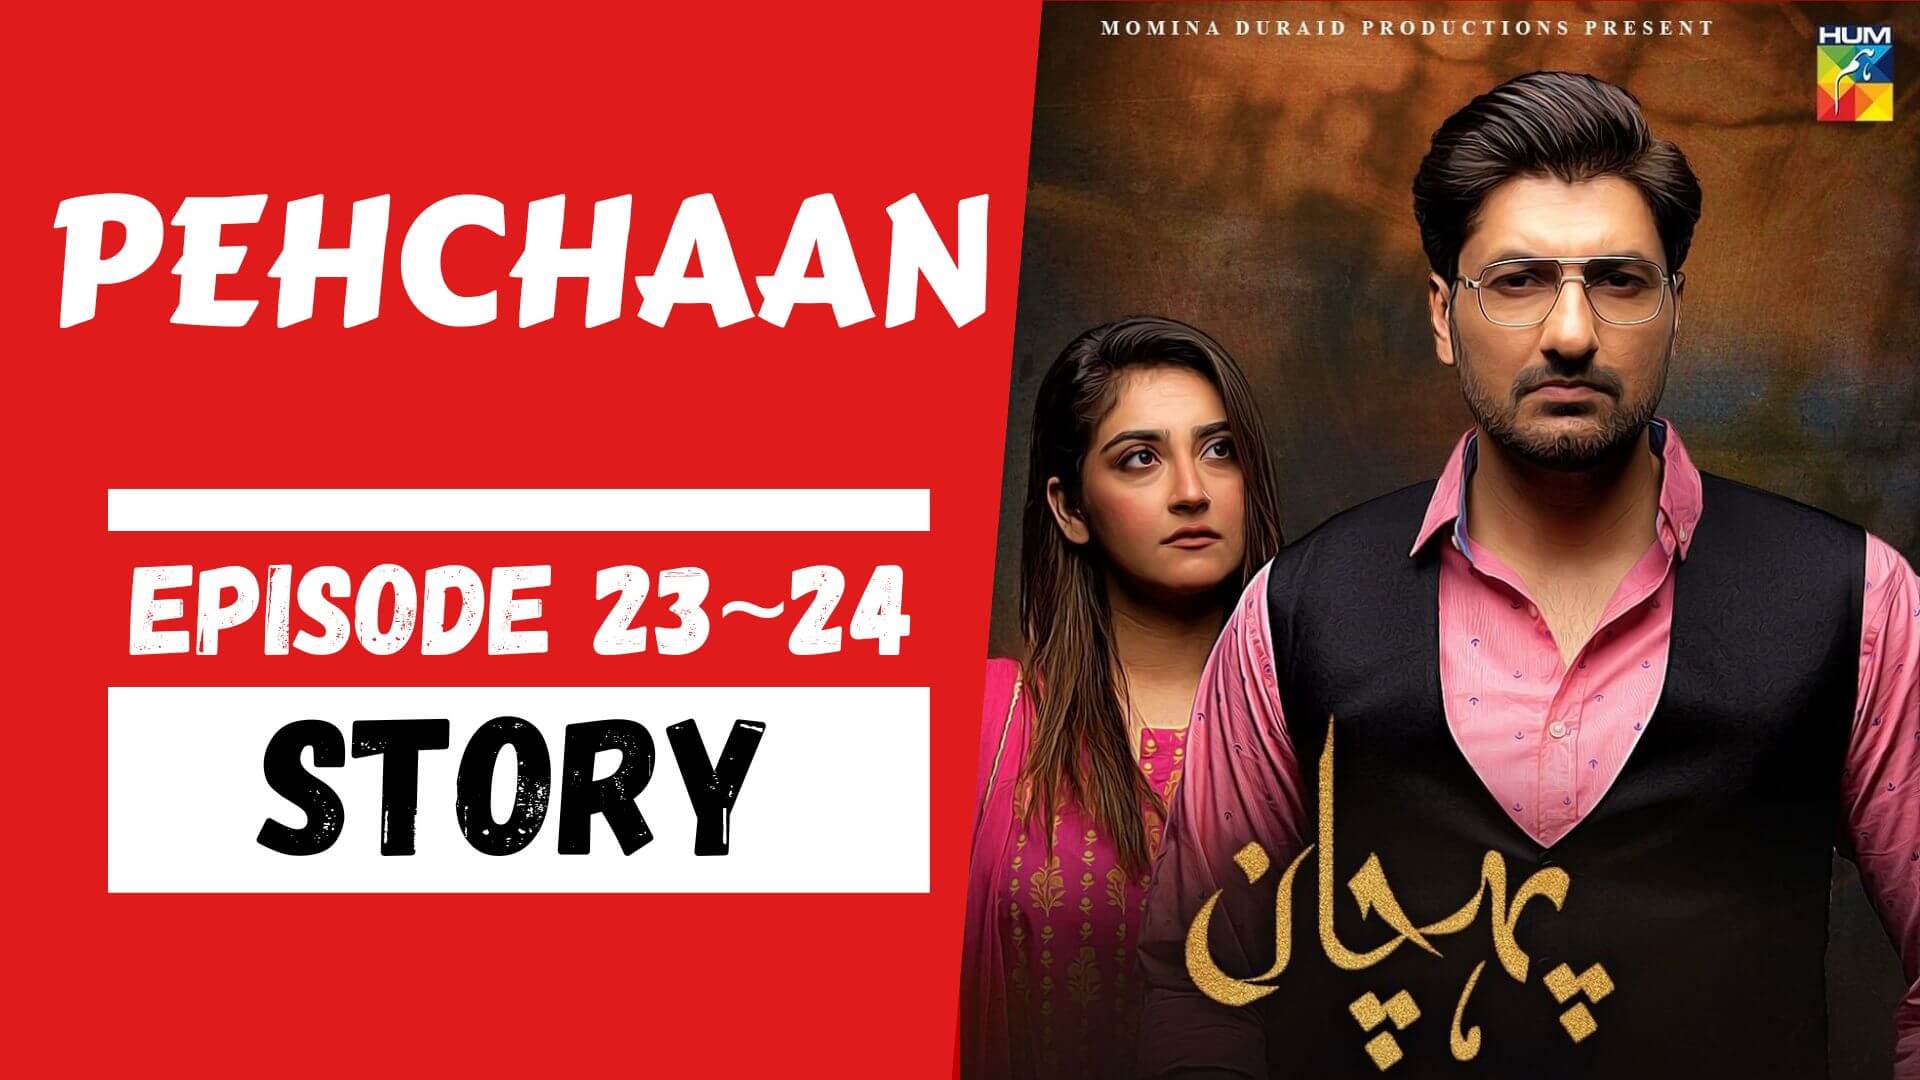 Pehchaan Episode 23_24 Story